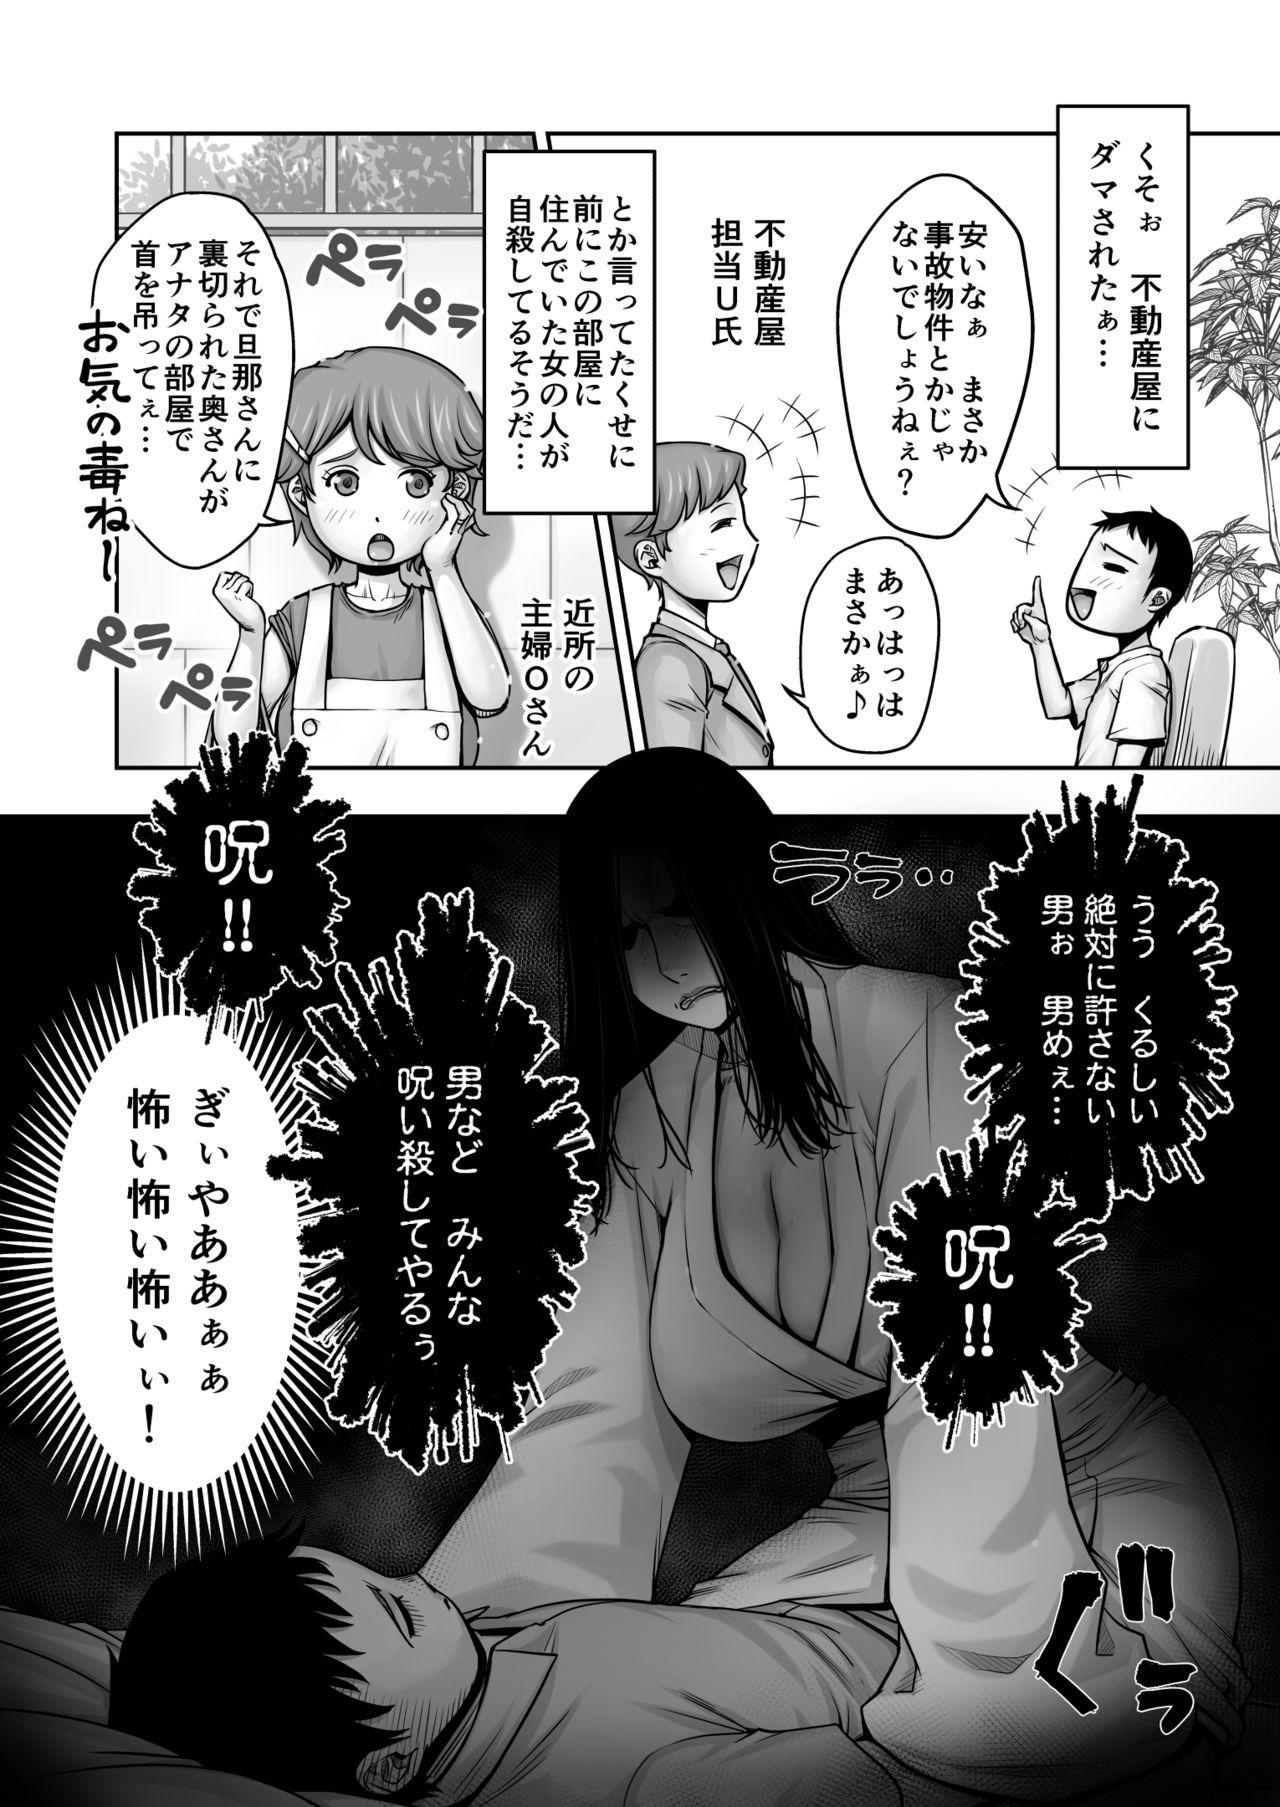 Orgy Dōtei ga heya ni tori tsuite iru on'na yūrei ni gyaku kanashibari o kaketa kekka - Original Pene - Page 3